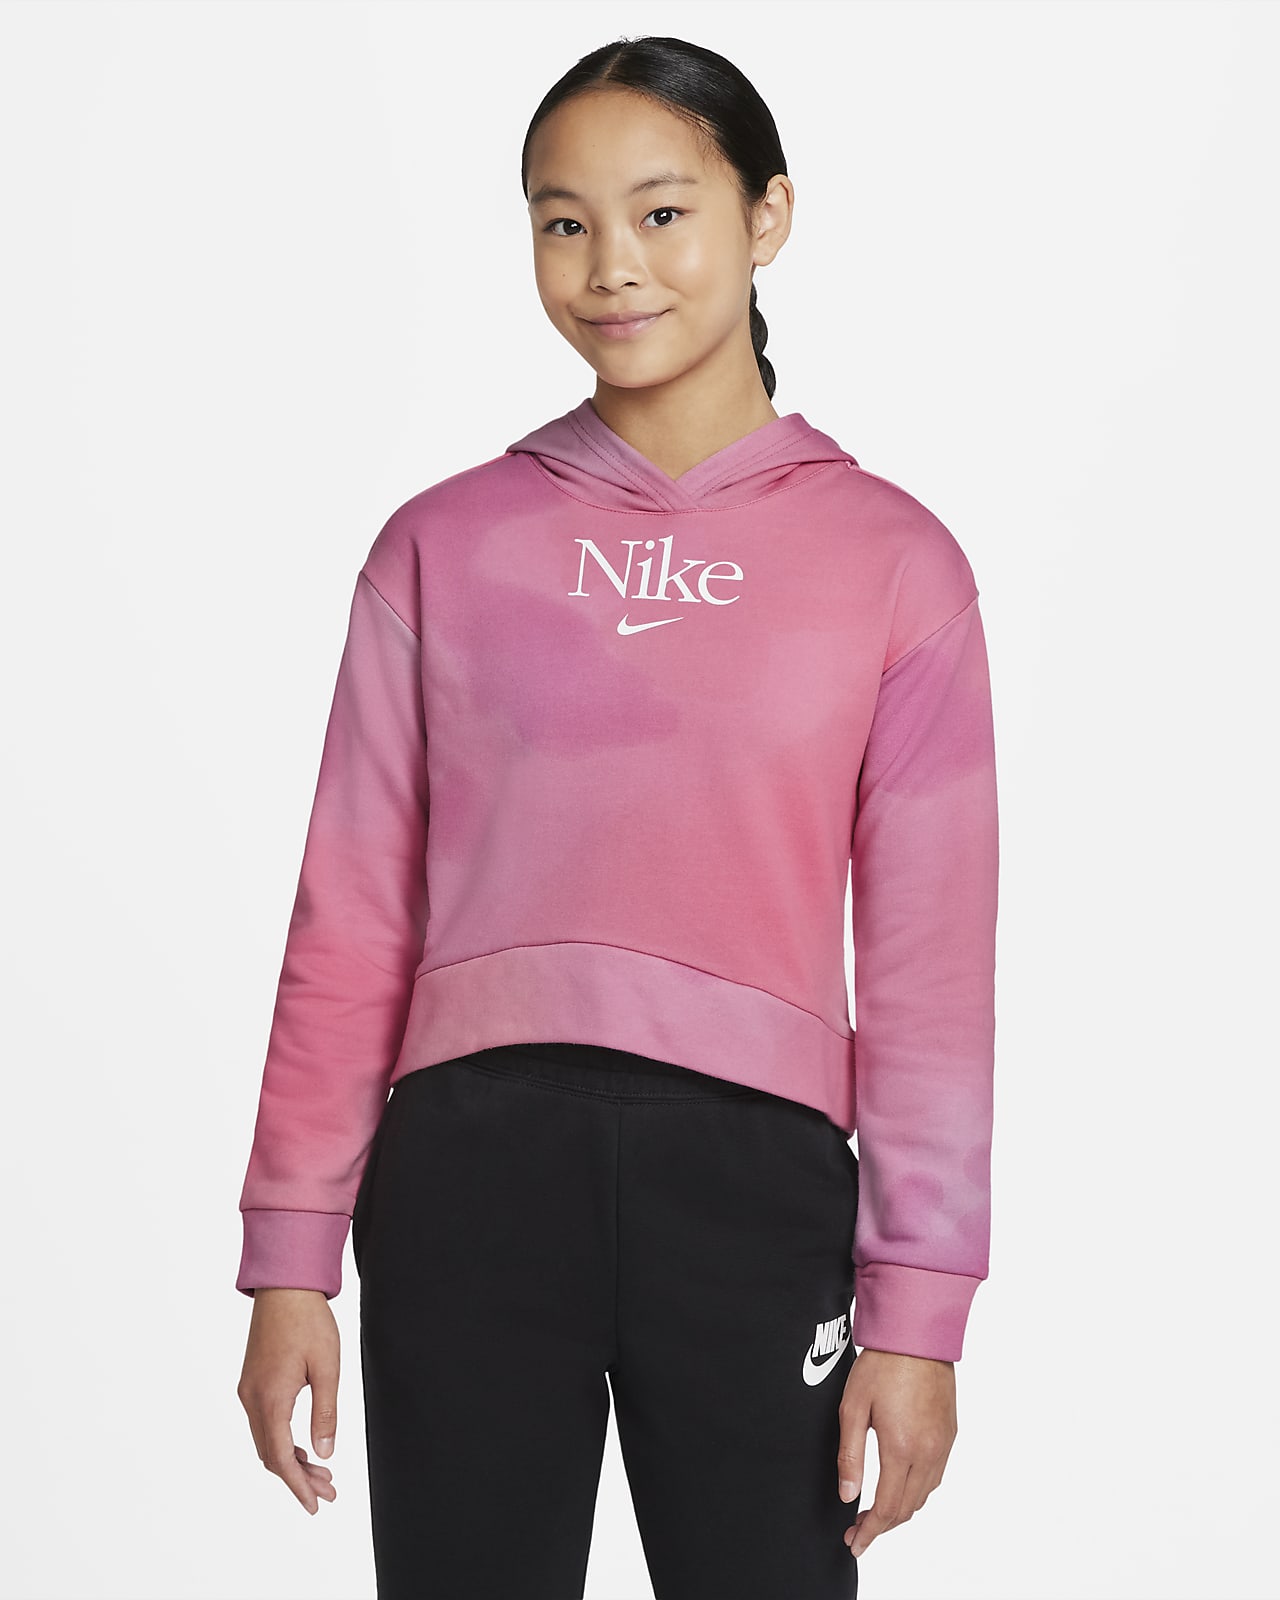 เสื้อมีฮู้ดผ้าเฟรนช์เทรีเด็กโตแบบสวม Nike Sportswear (หญิง)